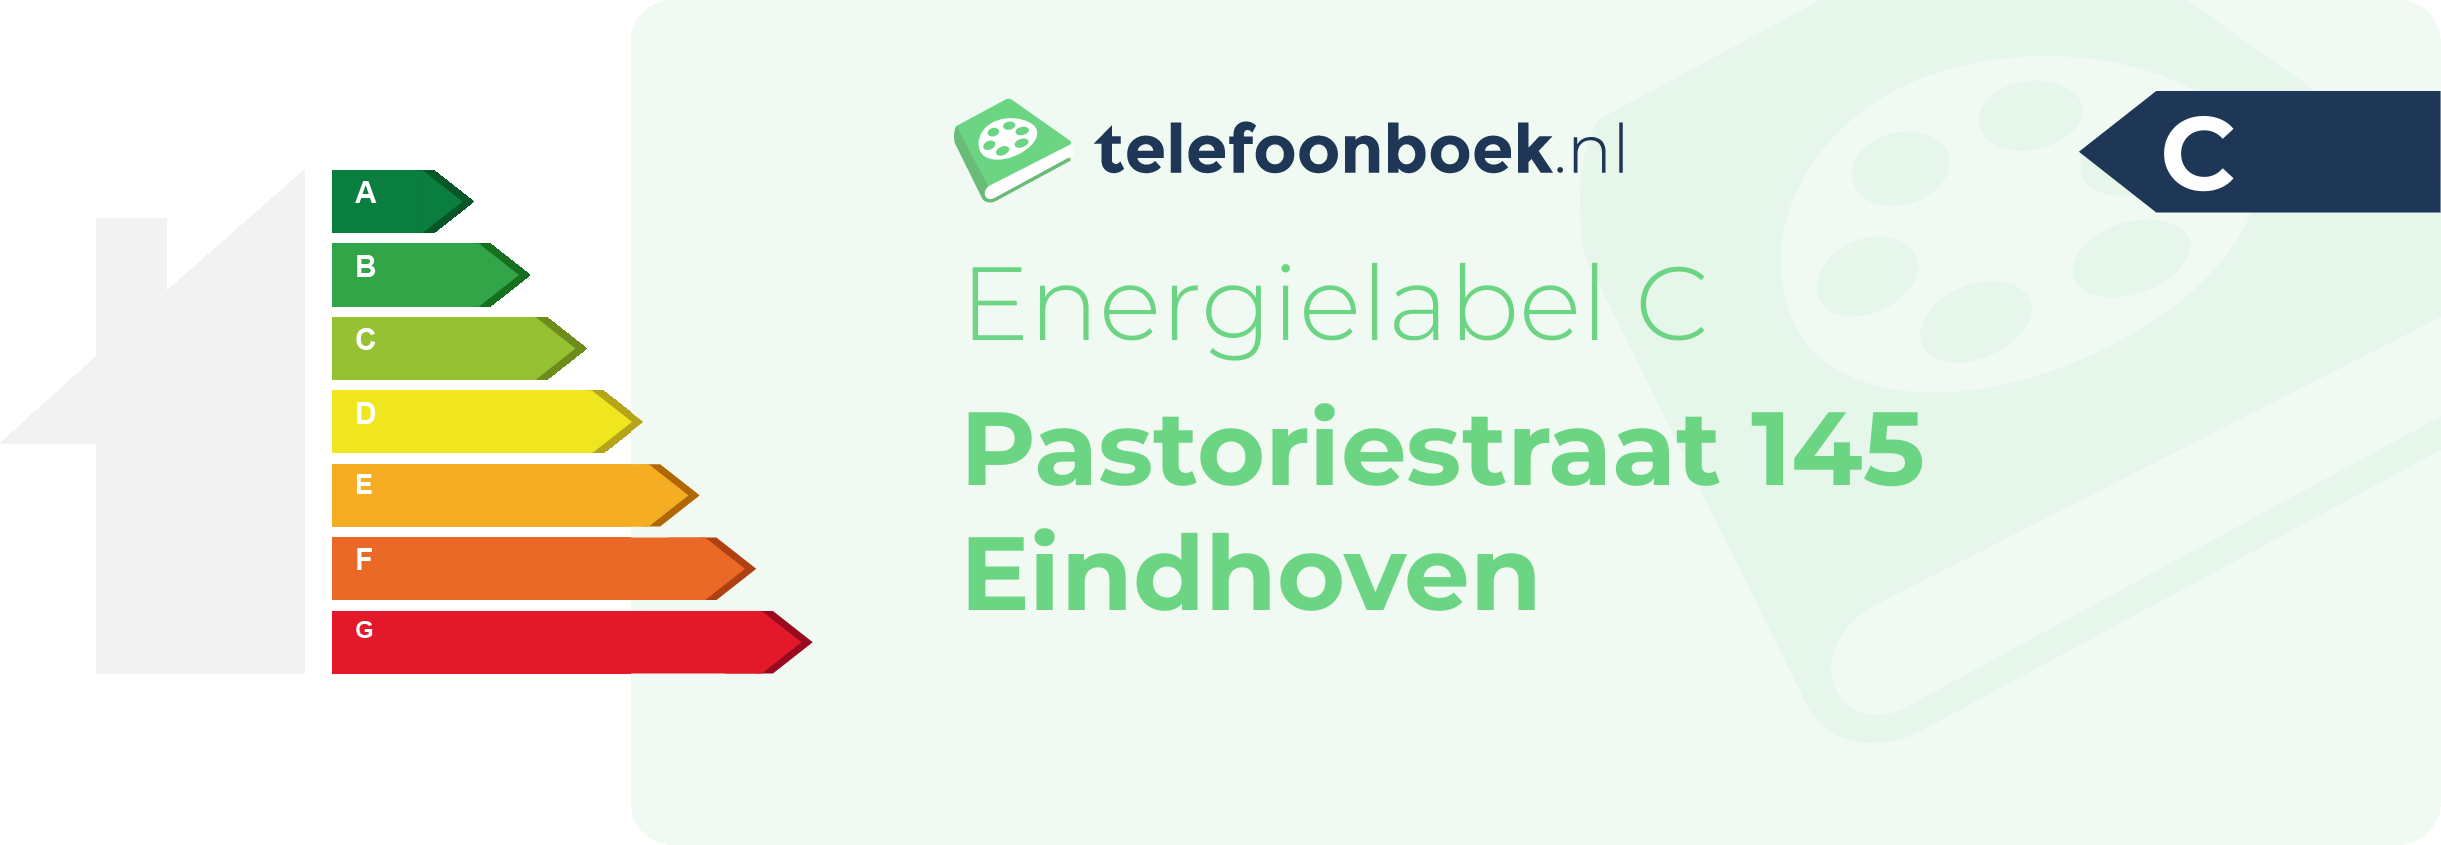 Energielabel Pastoriestraat 145 Eindhoven